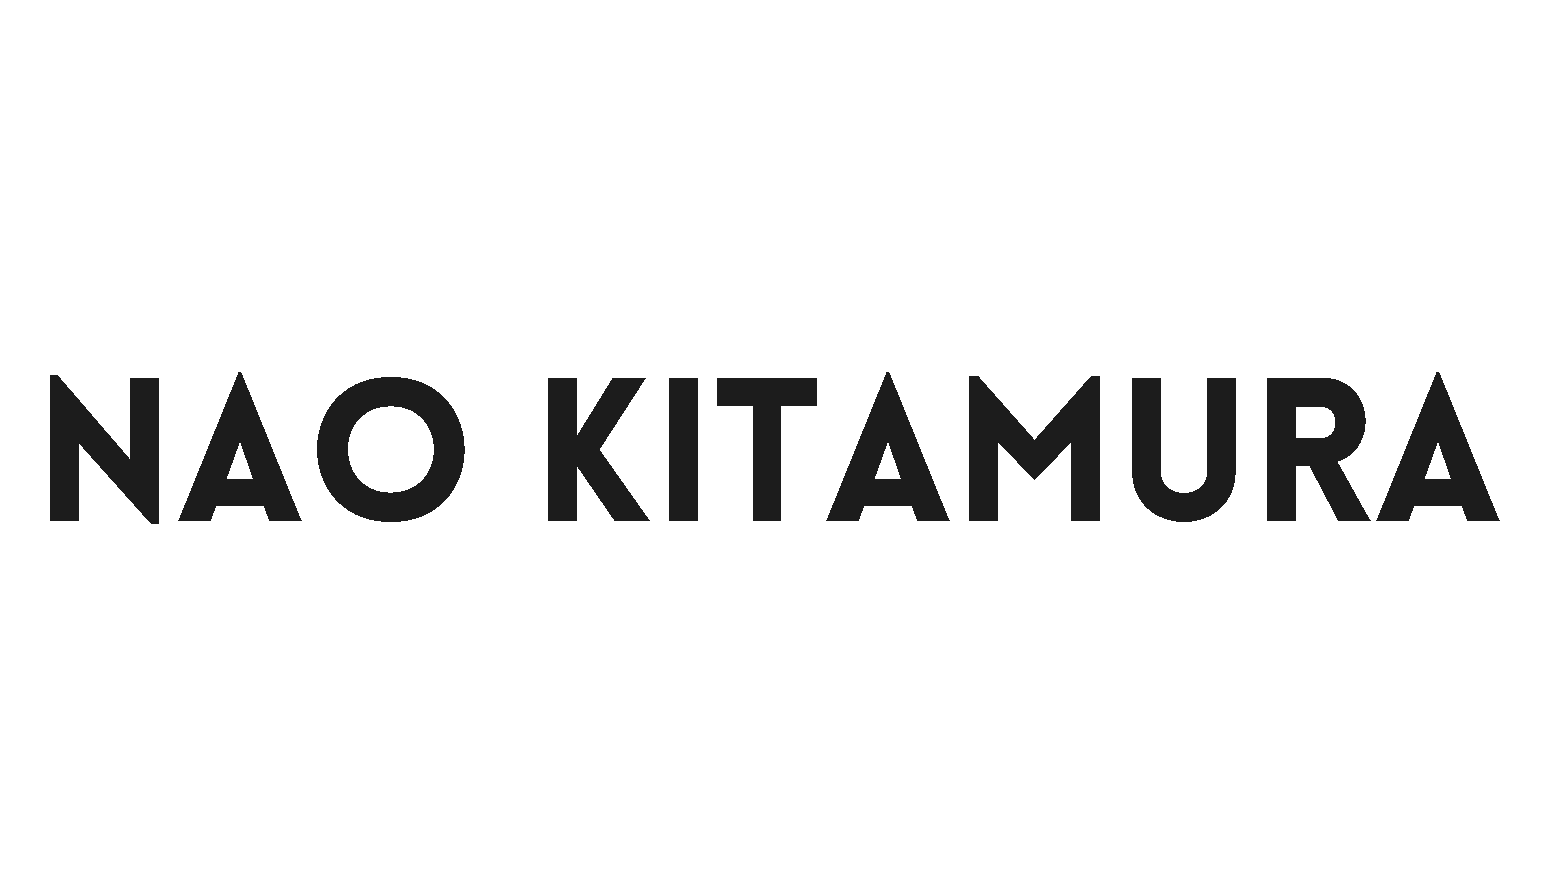 NAO KITAMURA